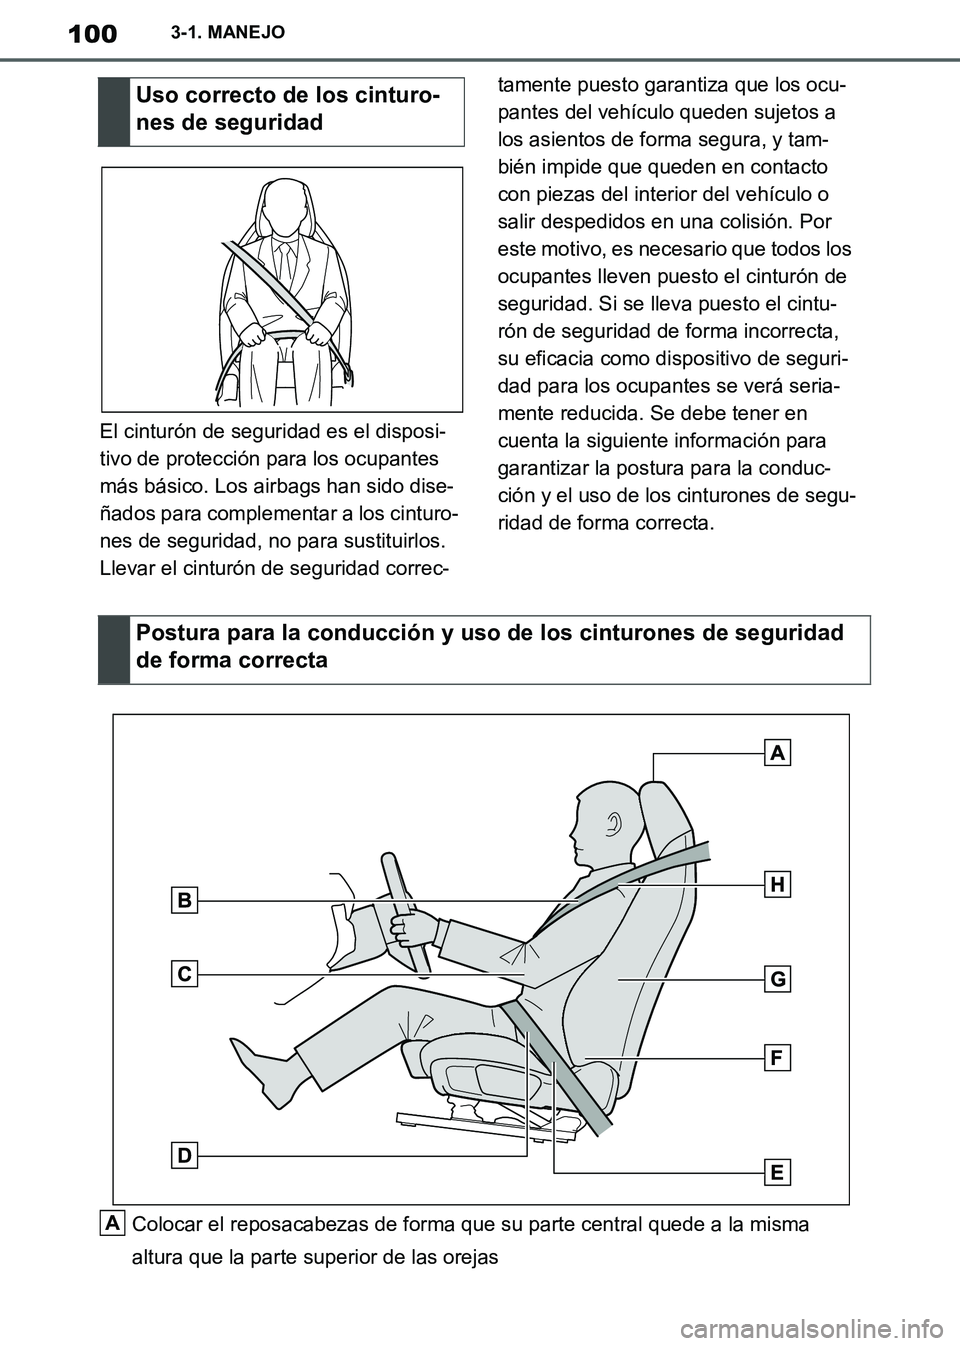 TOYOTA SUPRA 2019  Manuale de Empleo (in Spanish) 100
Supra Owners Manual_ES
3-1. MANEJO
El cinturón de seguridad es el disposi-
tivo de protección para los ocupantes 
más básico. Los airbags han sido dise-
ñados para complementar a los cinturo